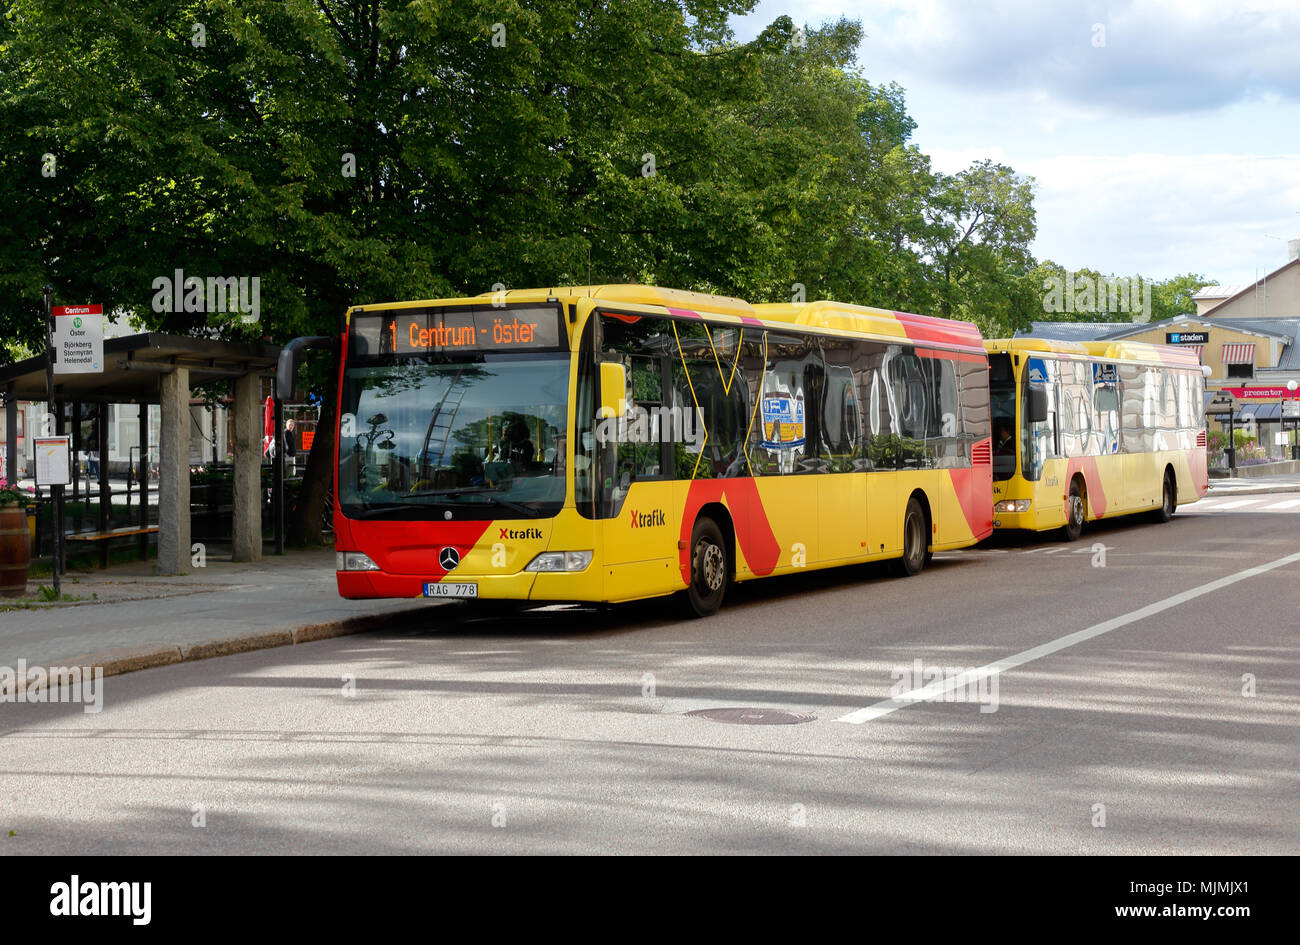 Hudiksvall, Svezia - Luglio 5, 2017: Tw giallo autobus alla fermata Centrum in servizio per Xtrafik. Foto Stock